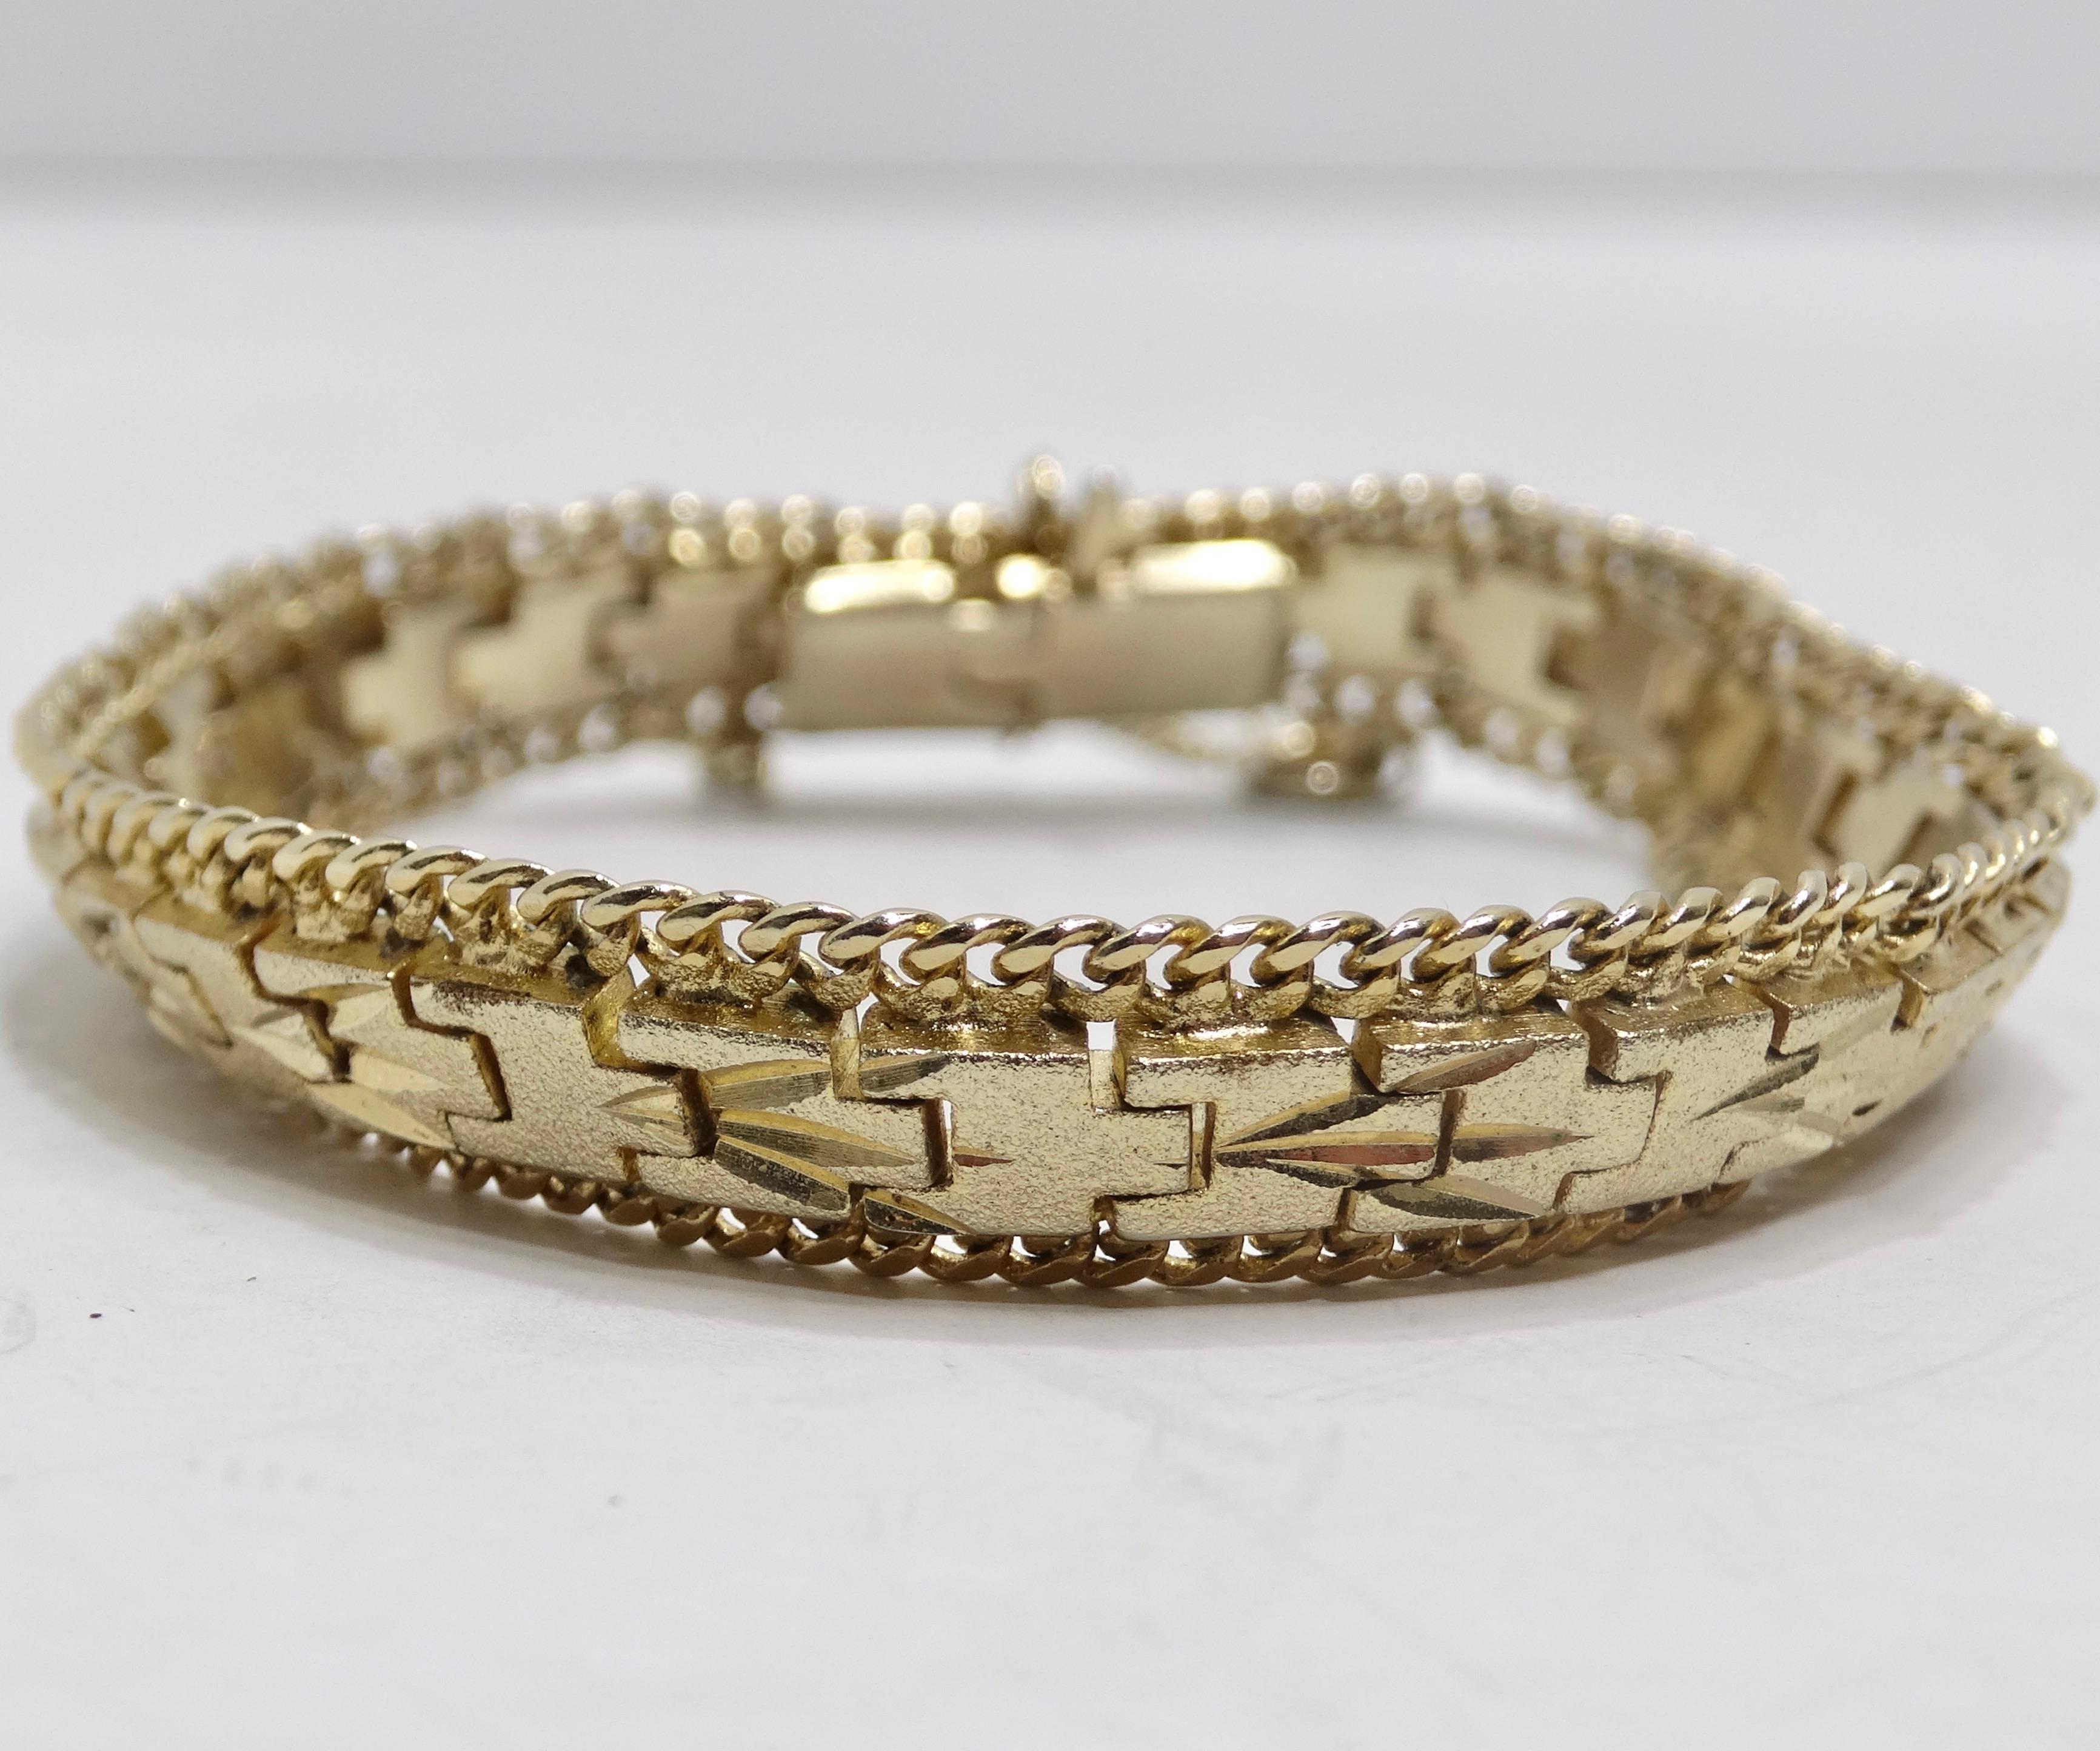 Wir stellen Ihnen ein Armband vor, das über das Gewöhnliche hinausgeht und die Essenz zeitlosen Luxus verkörpert - das 24-karätig vergoldete 1960er-Jahre-Kettenarmband. Dieses wunderschöne Armband zeichnet sich durch ein einzigartiges Gliedermotiv